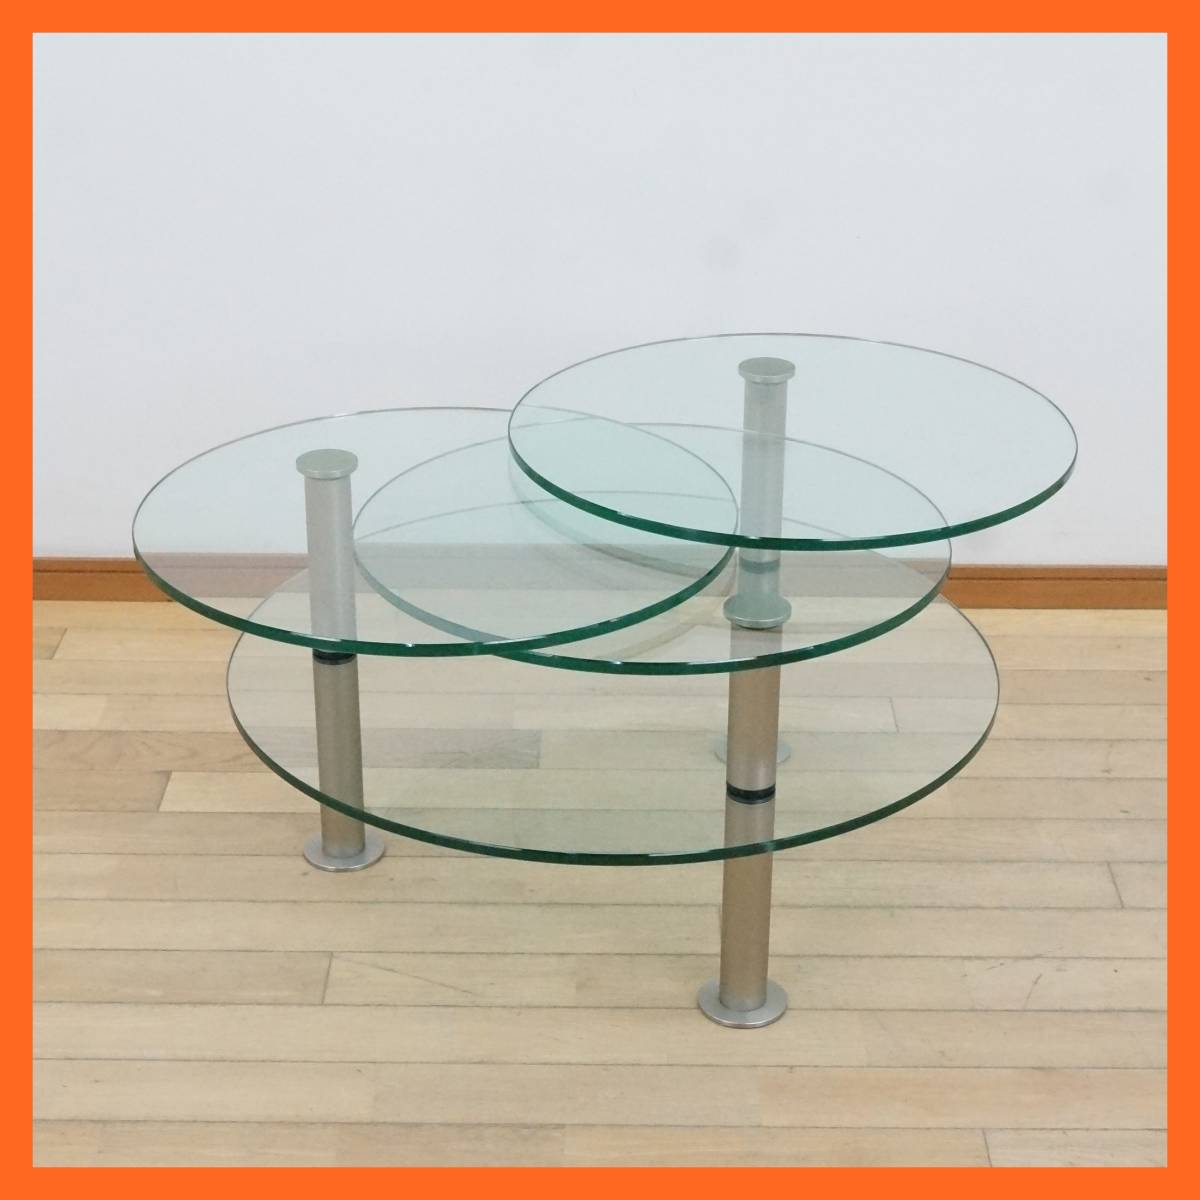 東ハ:【MOLLER DESIGN/モラーデザイン】Gironda ジロンダ テーブル 可変式 ガラス サイドテーブル コーヒーテーブル モダンインテリア